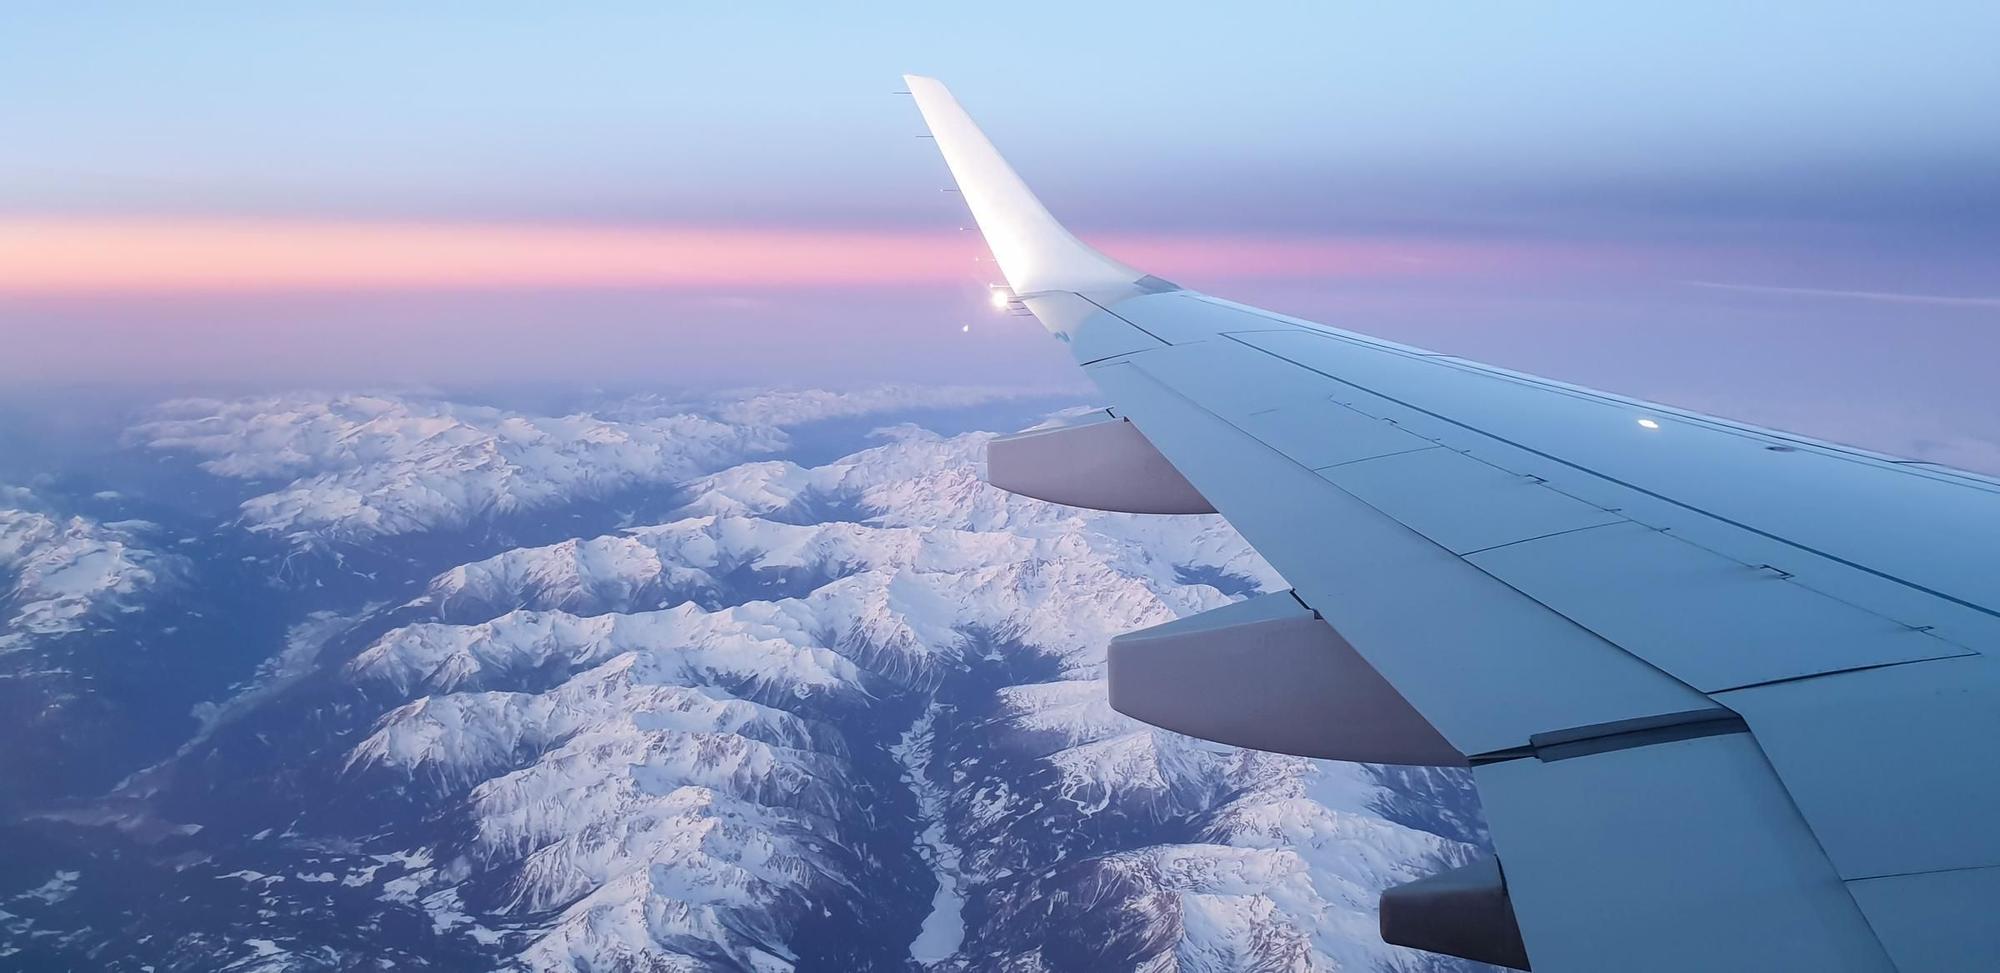 Volar sobre zonas montañosas puede provocar turbulencias en el avión